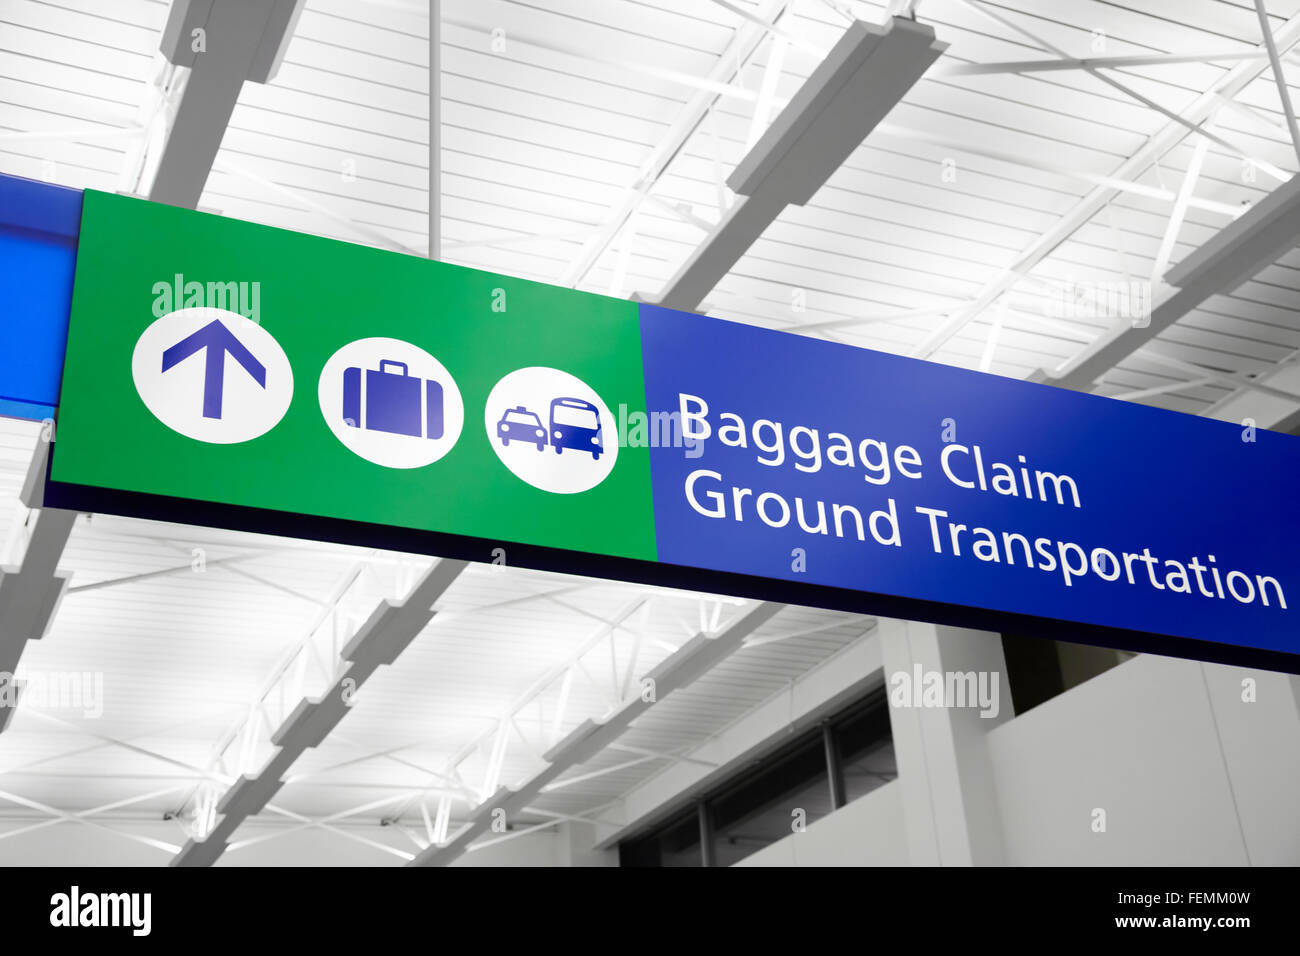 Reclamación de equipajes en aeropuertos y transporte por tierra firme con maleta, autobús, taxi y símbolos. Signo es el azul y el verde. Foto de stock